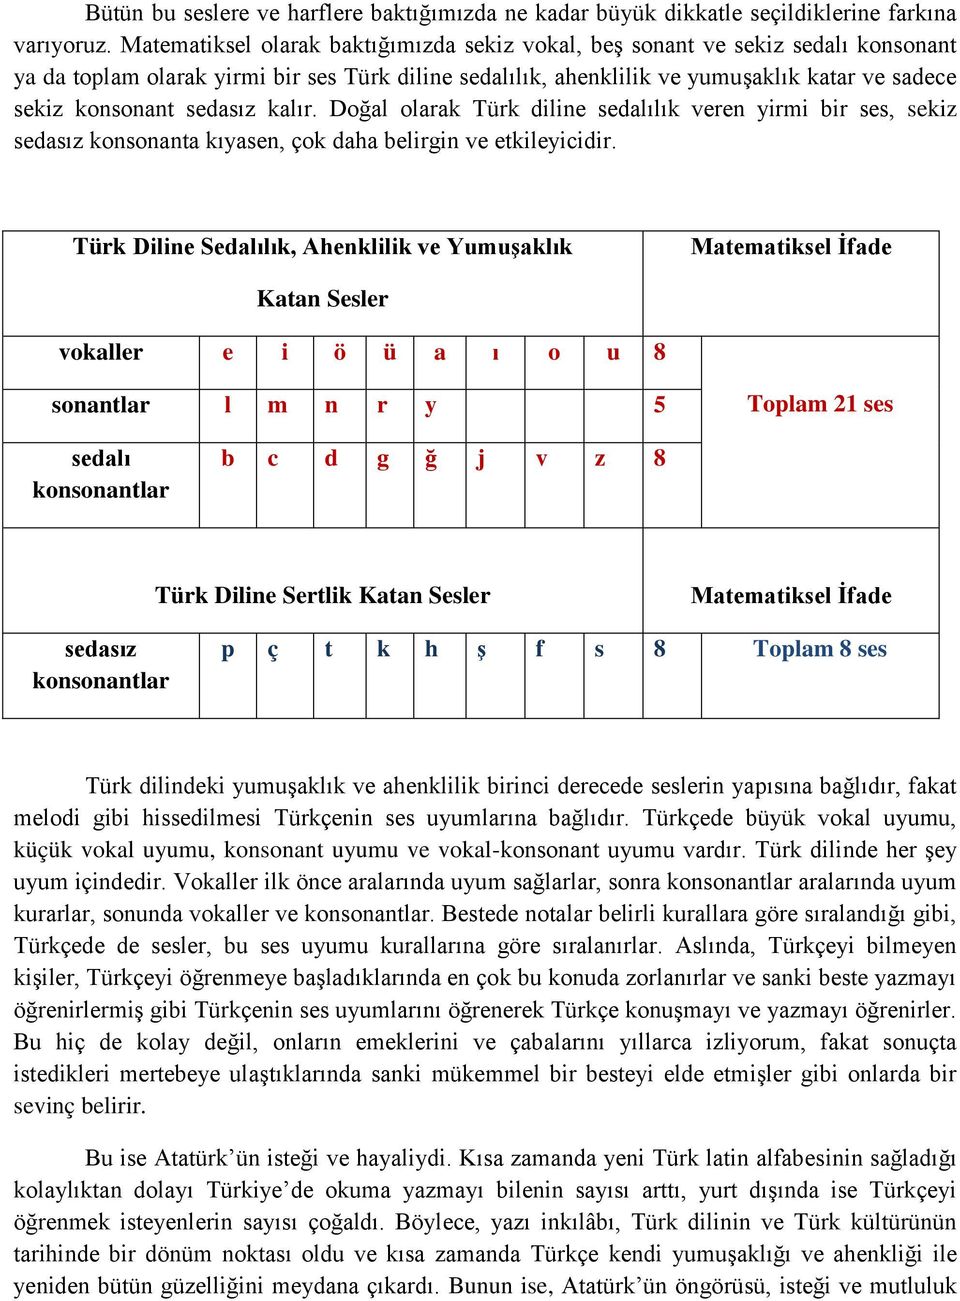 sedasız kalır. Doğal olarak Türk diline sedalılık veren yirmi bir ses, sekiz sedasız konsonanta kıyasen, çok daha belirgin ve etkileyicidir.